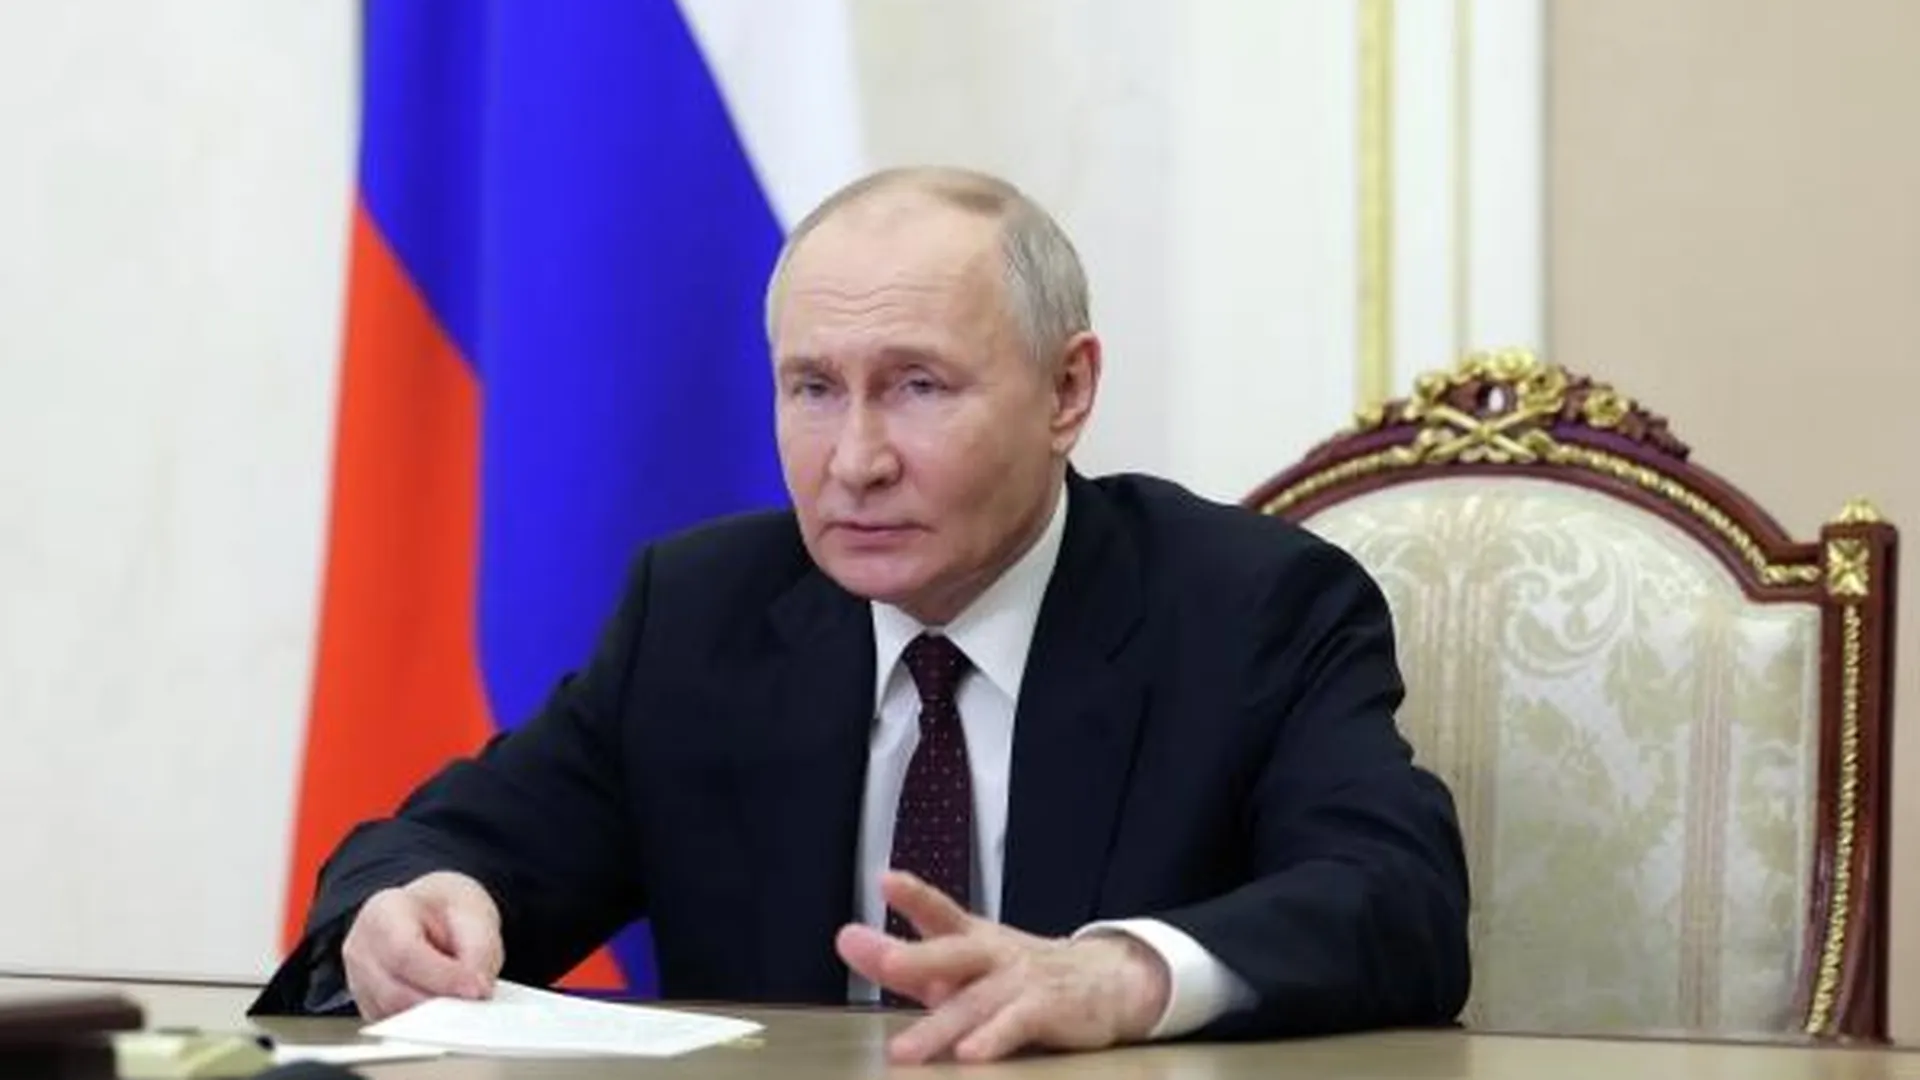 Великобритания отказалась направлять своего представителя на инаугурацию Путина